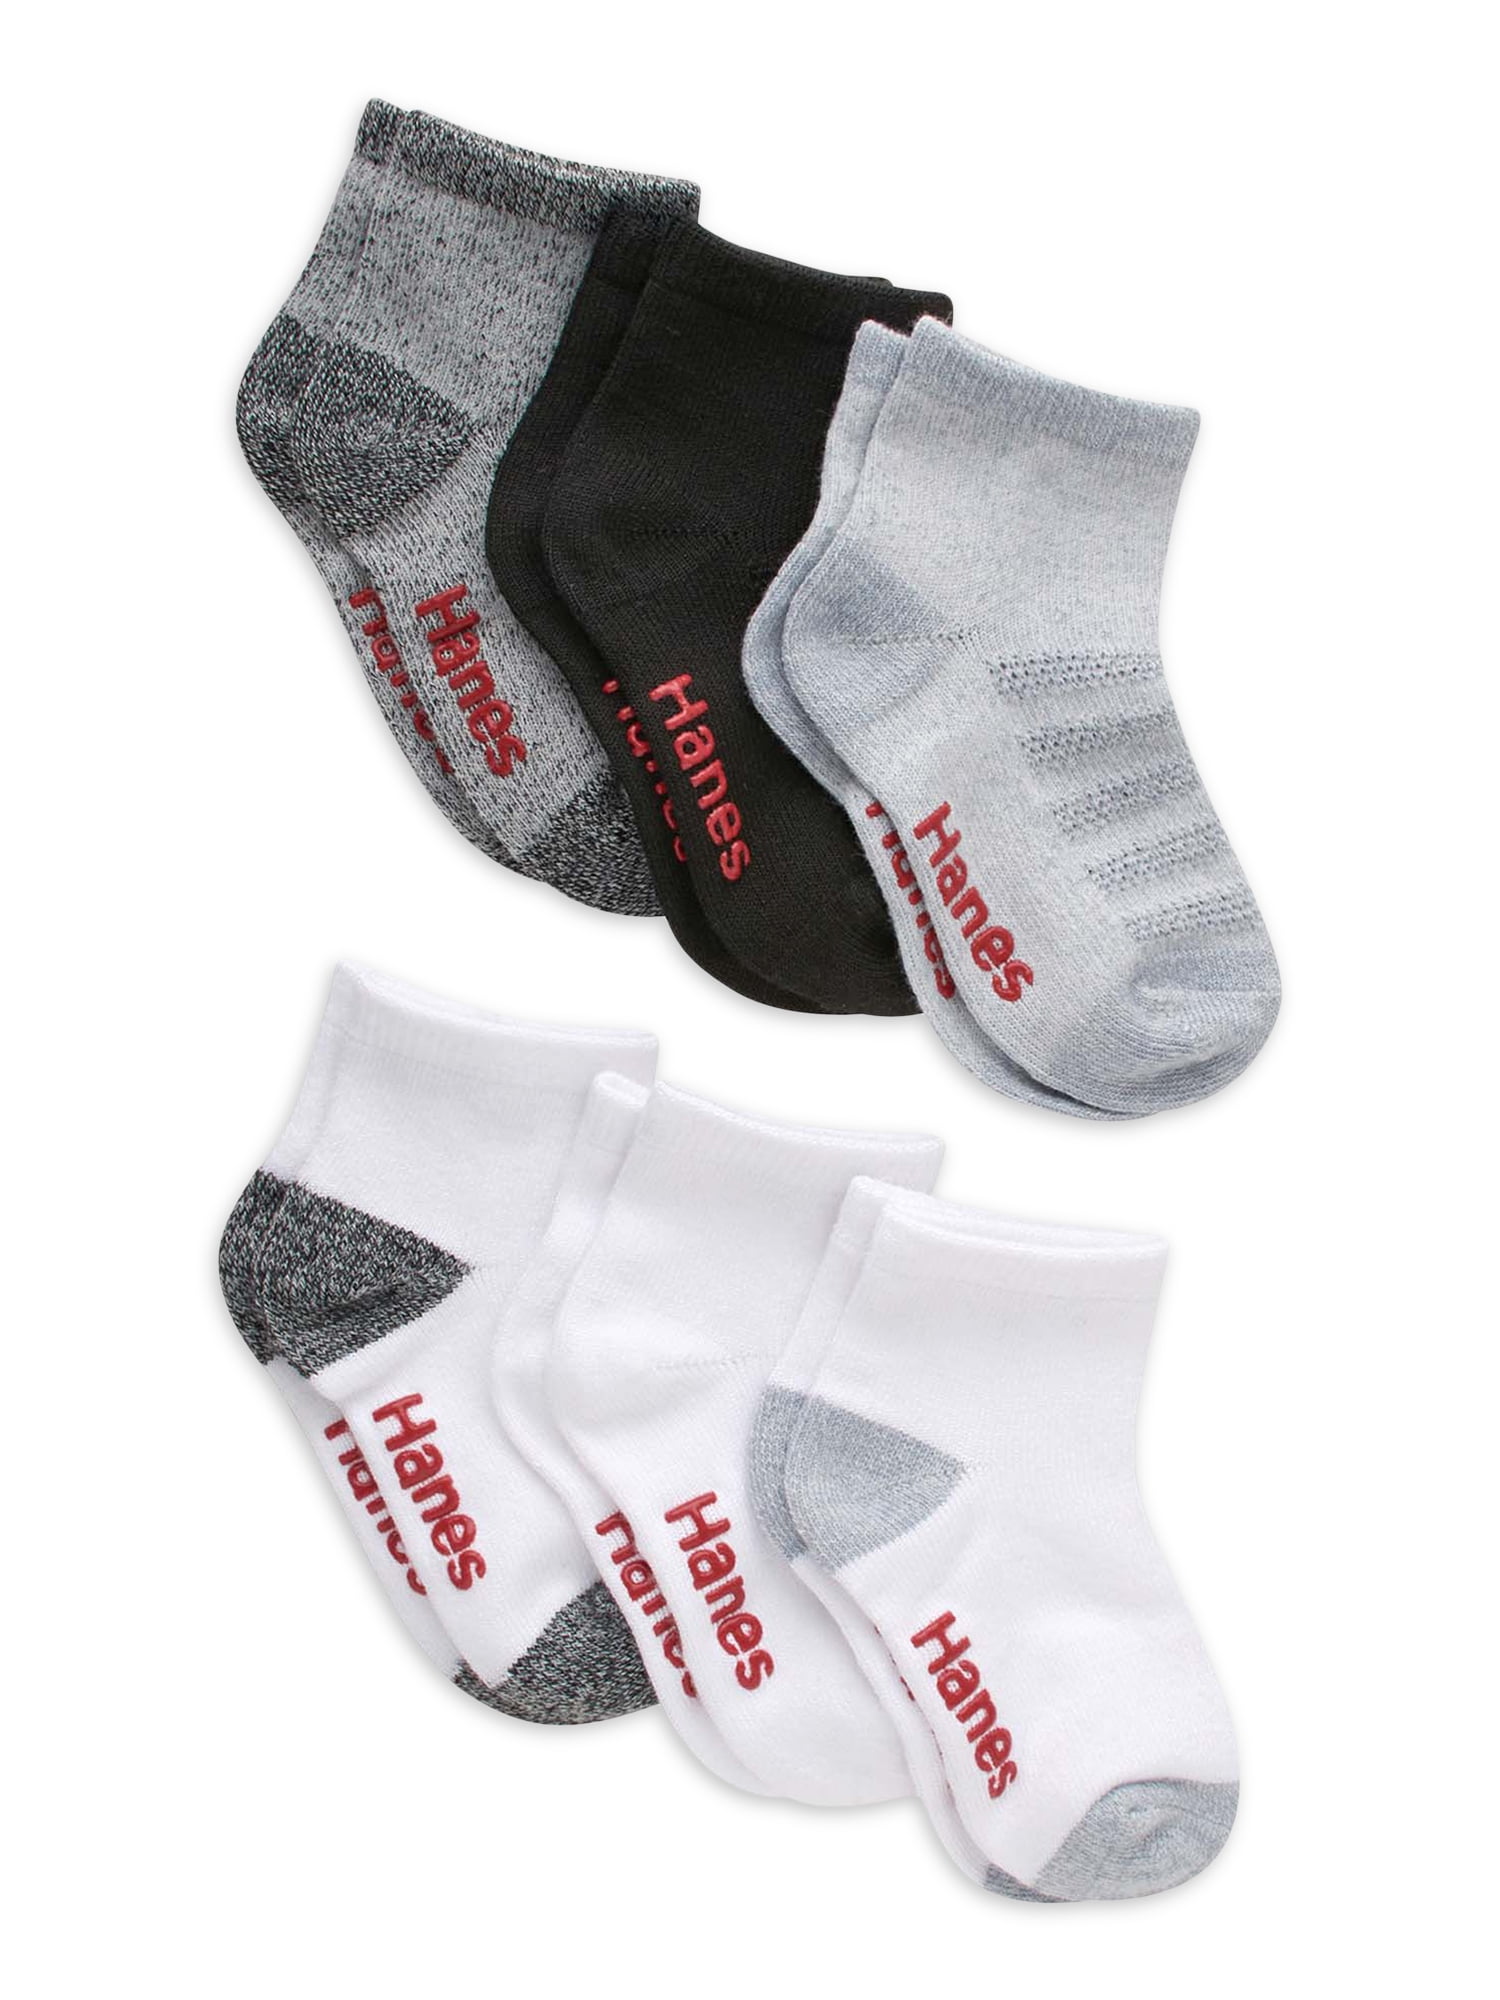 Hanes Toddler Boys Ankle Socks, 6 Pack, Sizes 12M-5T